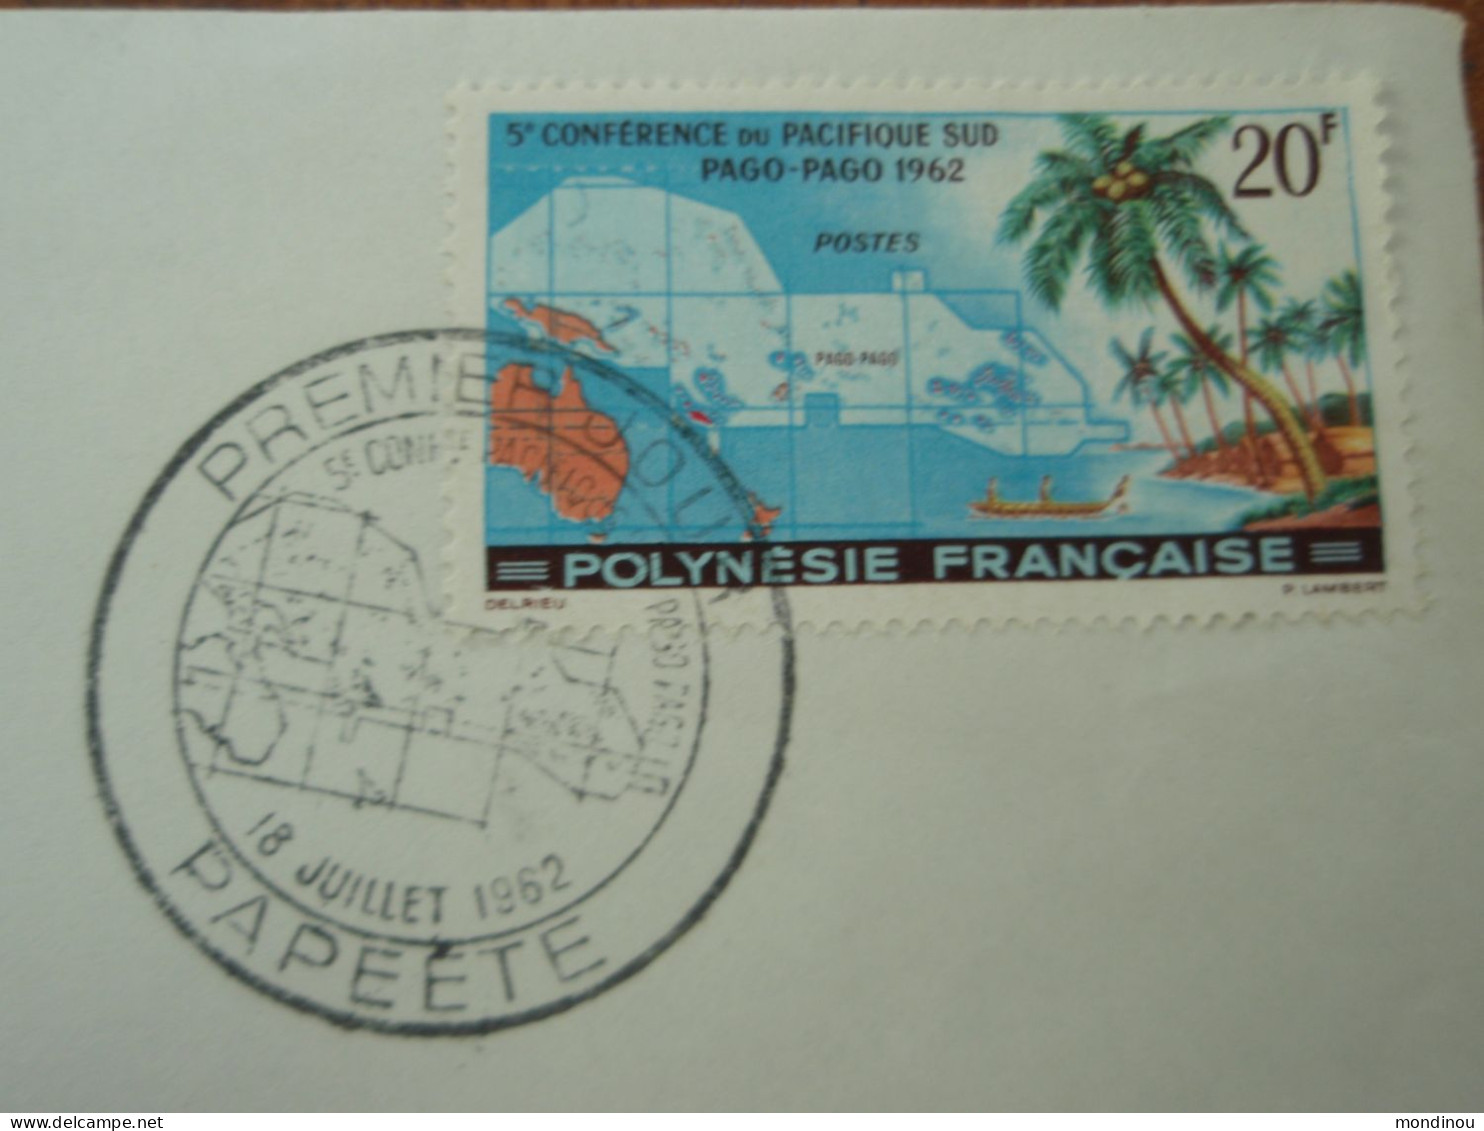 Timbre Polynésie Française - 5° Conférence Du Pacifique Sud PAGO-PAGO 1962 - Premier Jour PAPEETE - Gebruikt